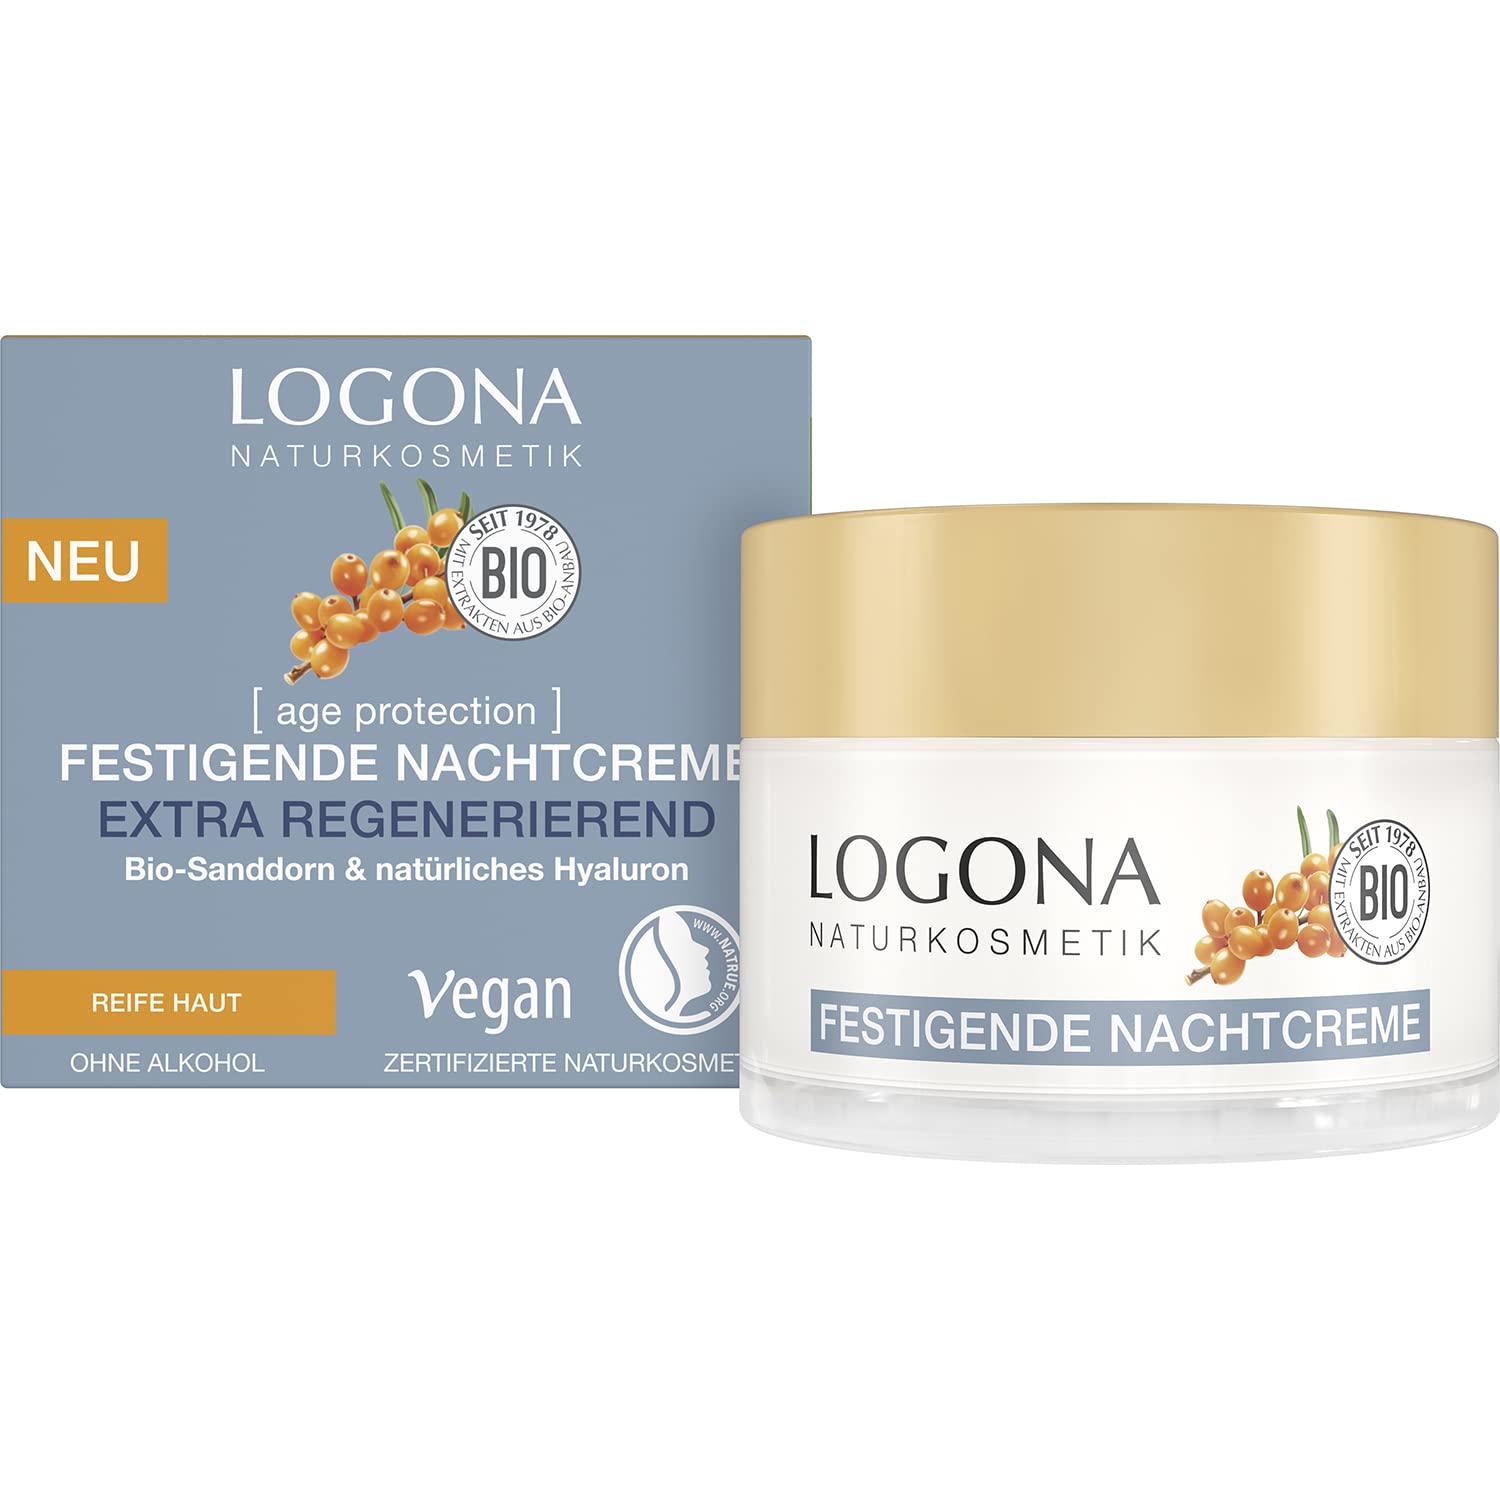 LOGONA Naturkosmetik Anti-Aging Nachtcreme, Regenerierende Gesichtspflege mit veganer Formel, Mit Bio-Sanddorn und Hyaluron, age protection, 50 ml